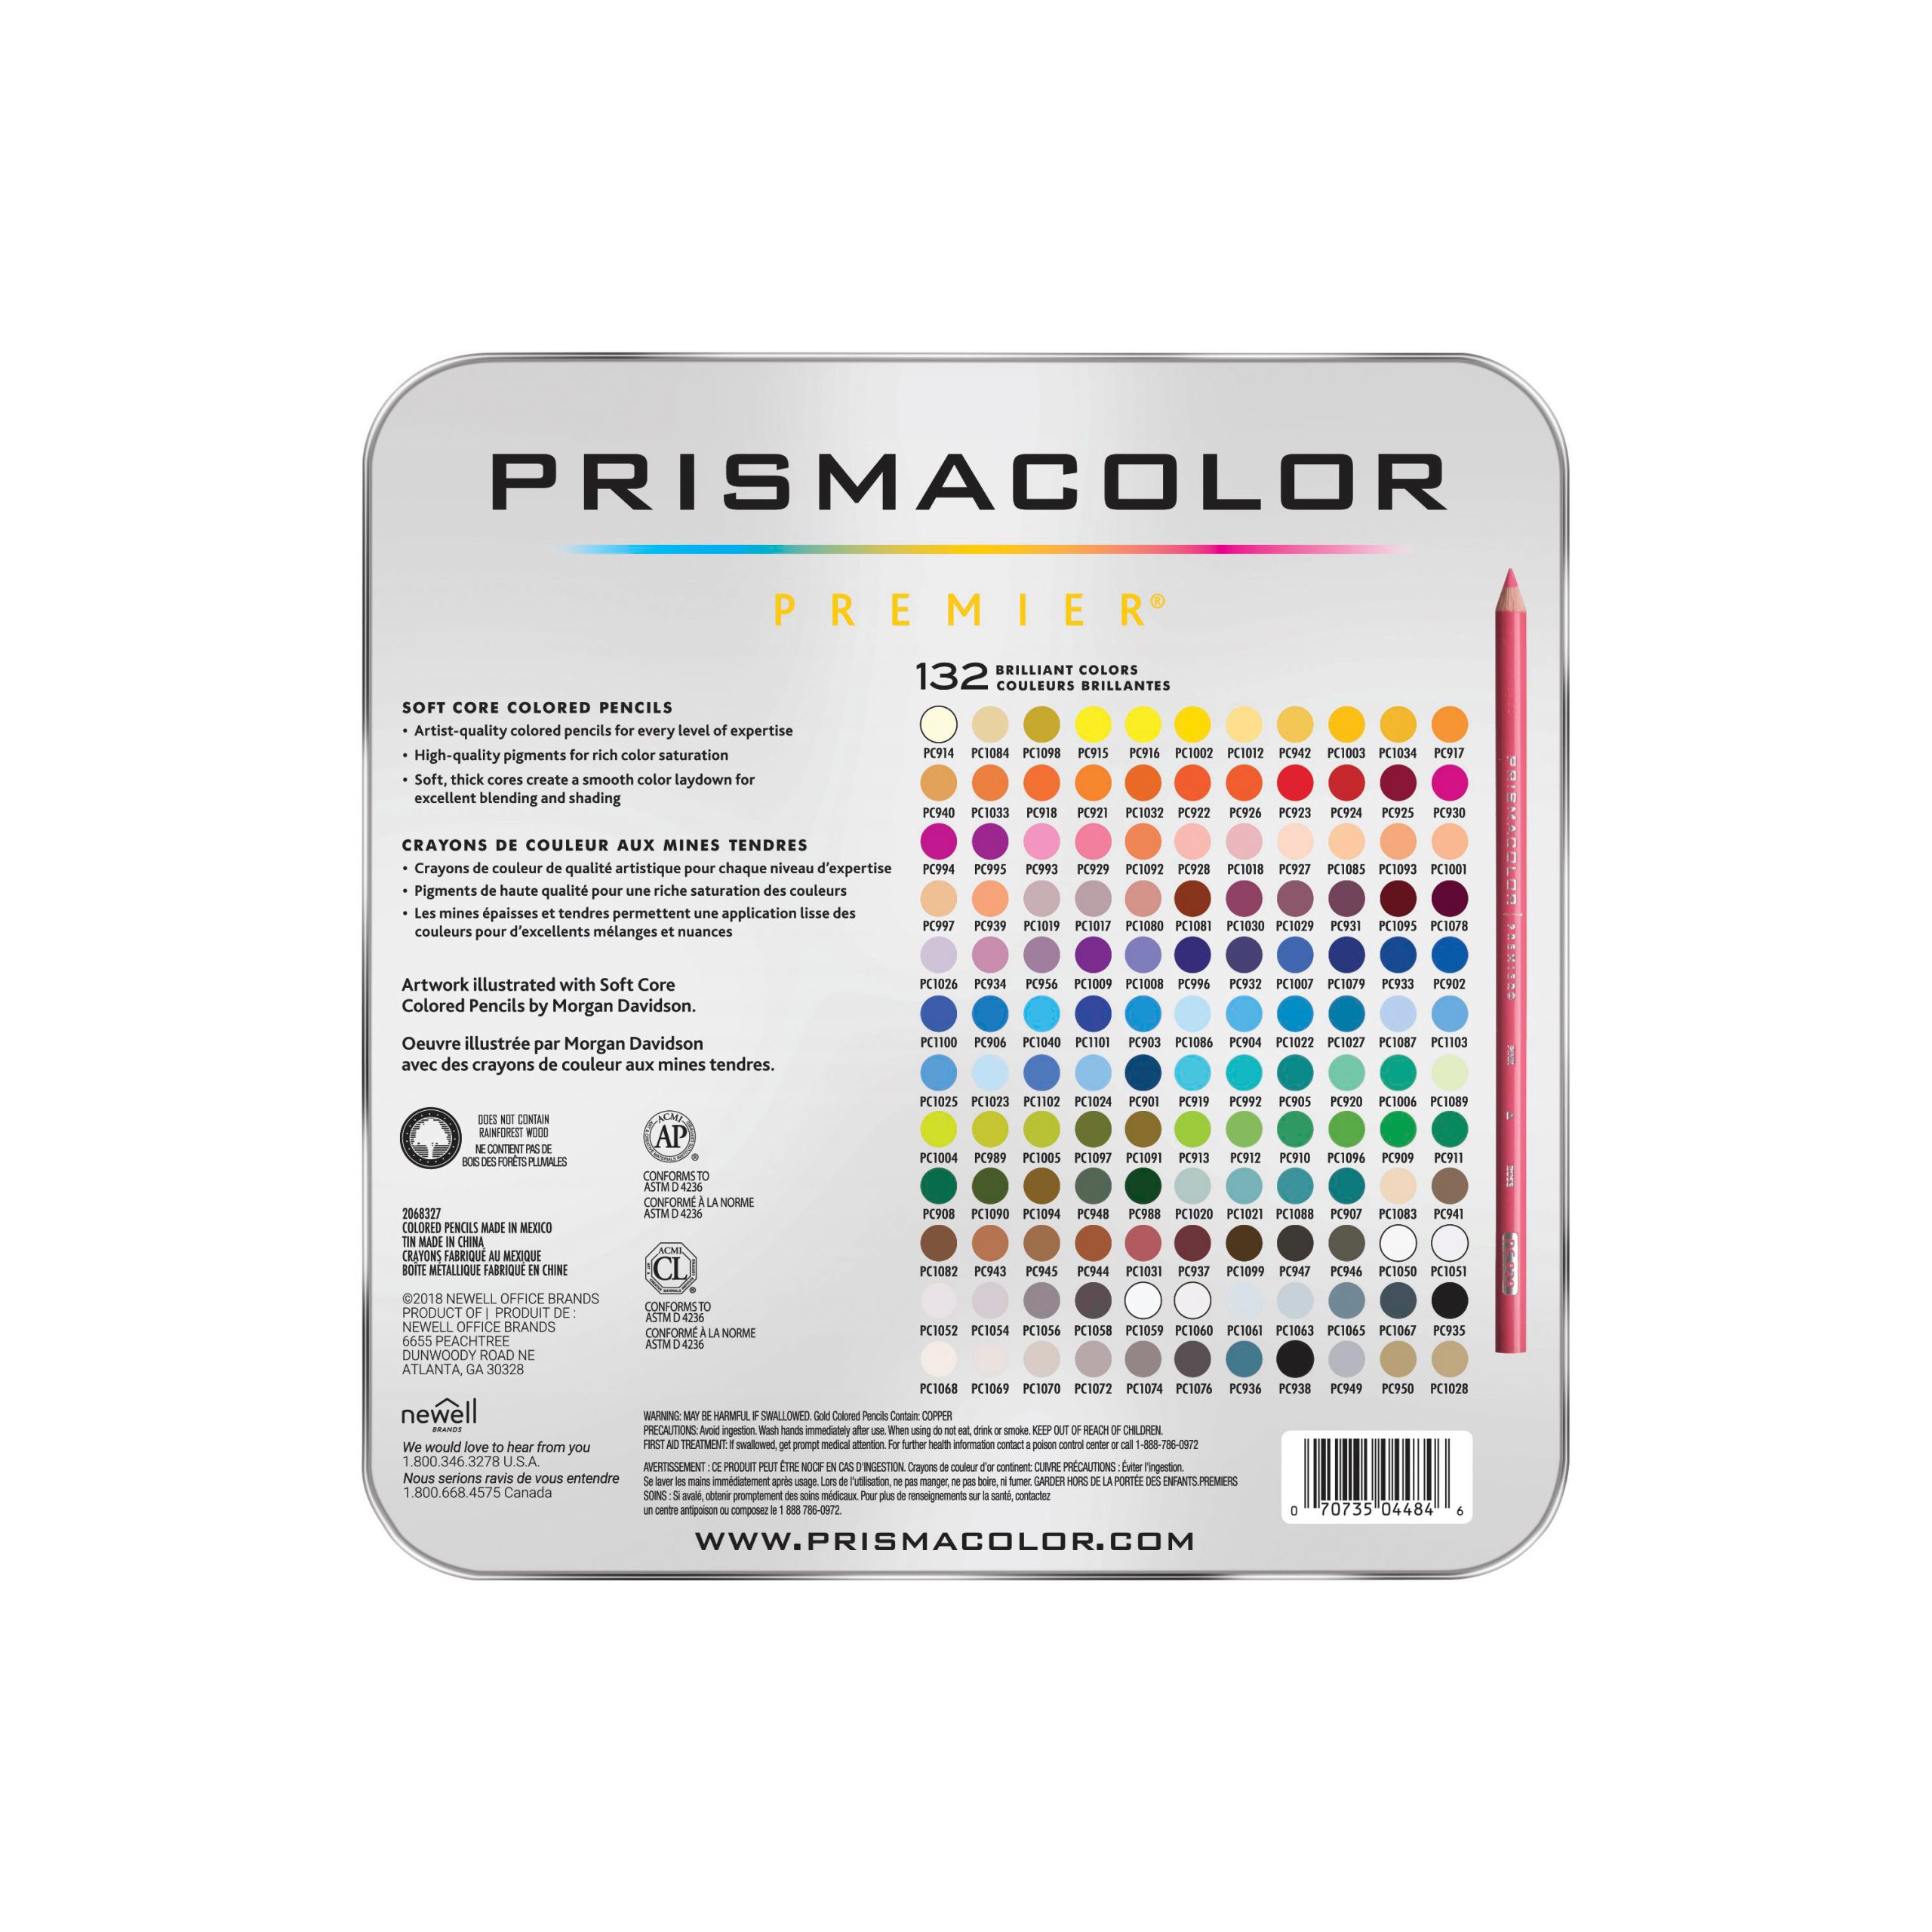 Premier Colored Pencil Sets set of 132